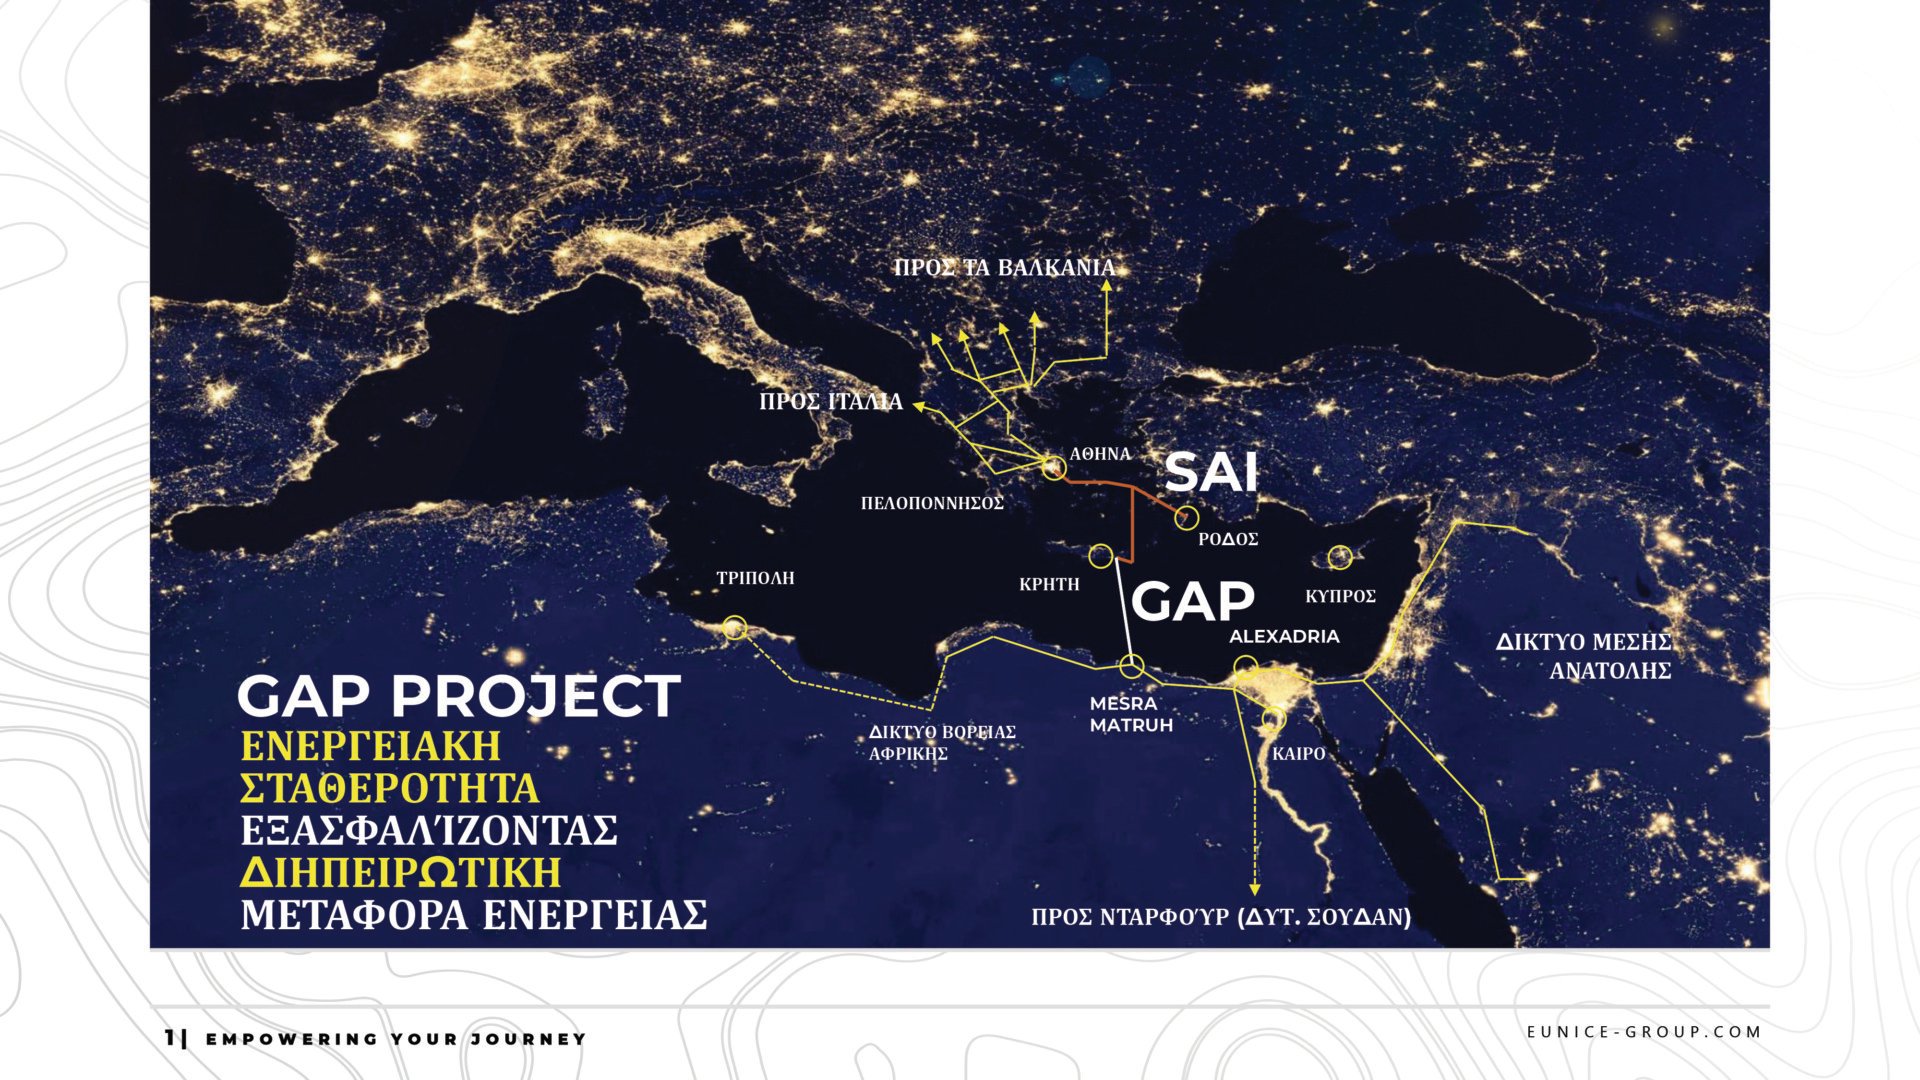 Ηλεκτρική διασύνδεση Ελλάδας - Αιγύπτου: To project Gap και οι σχεδιασμοί του